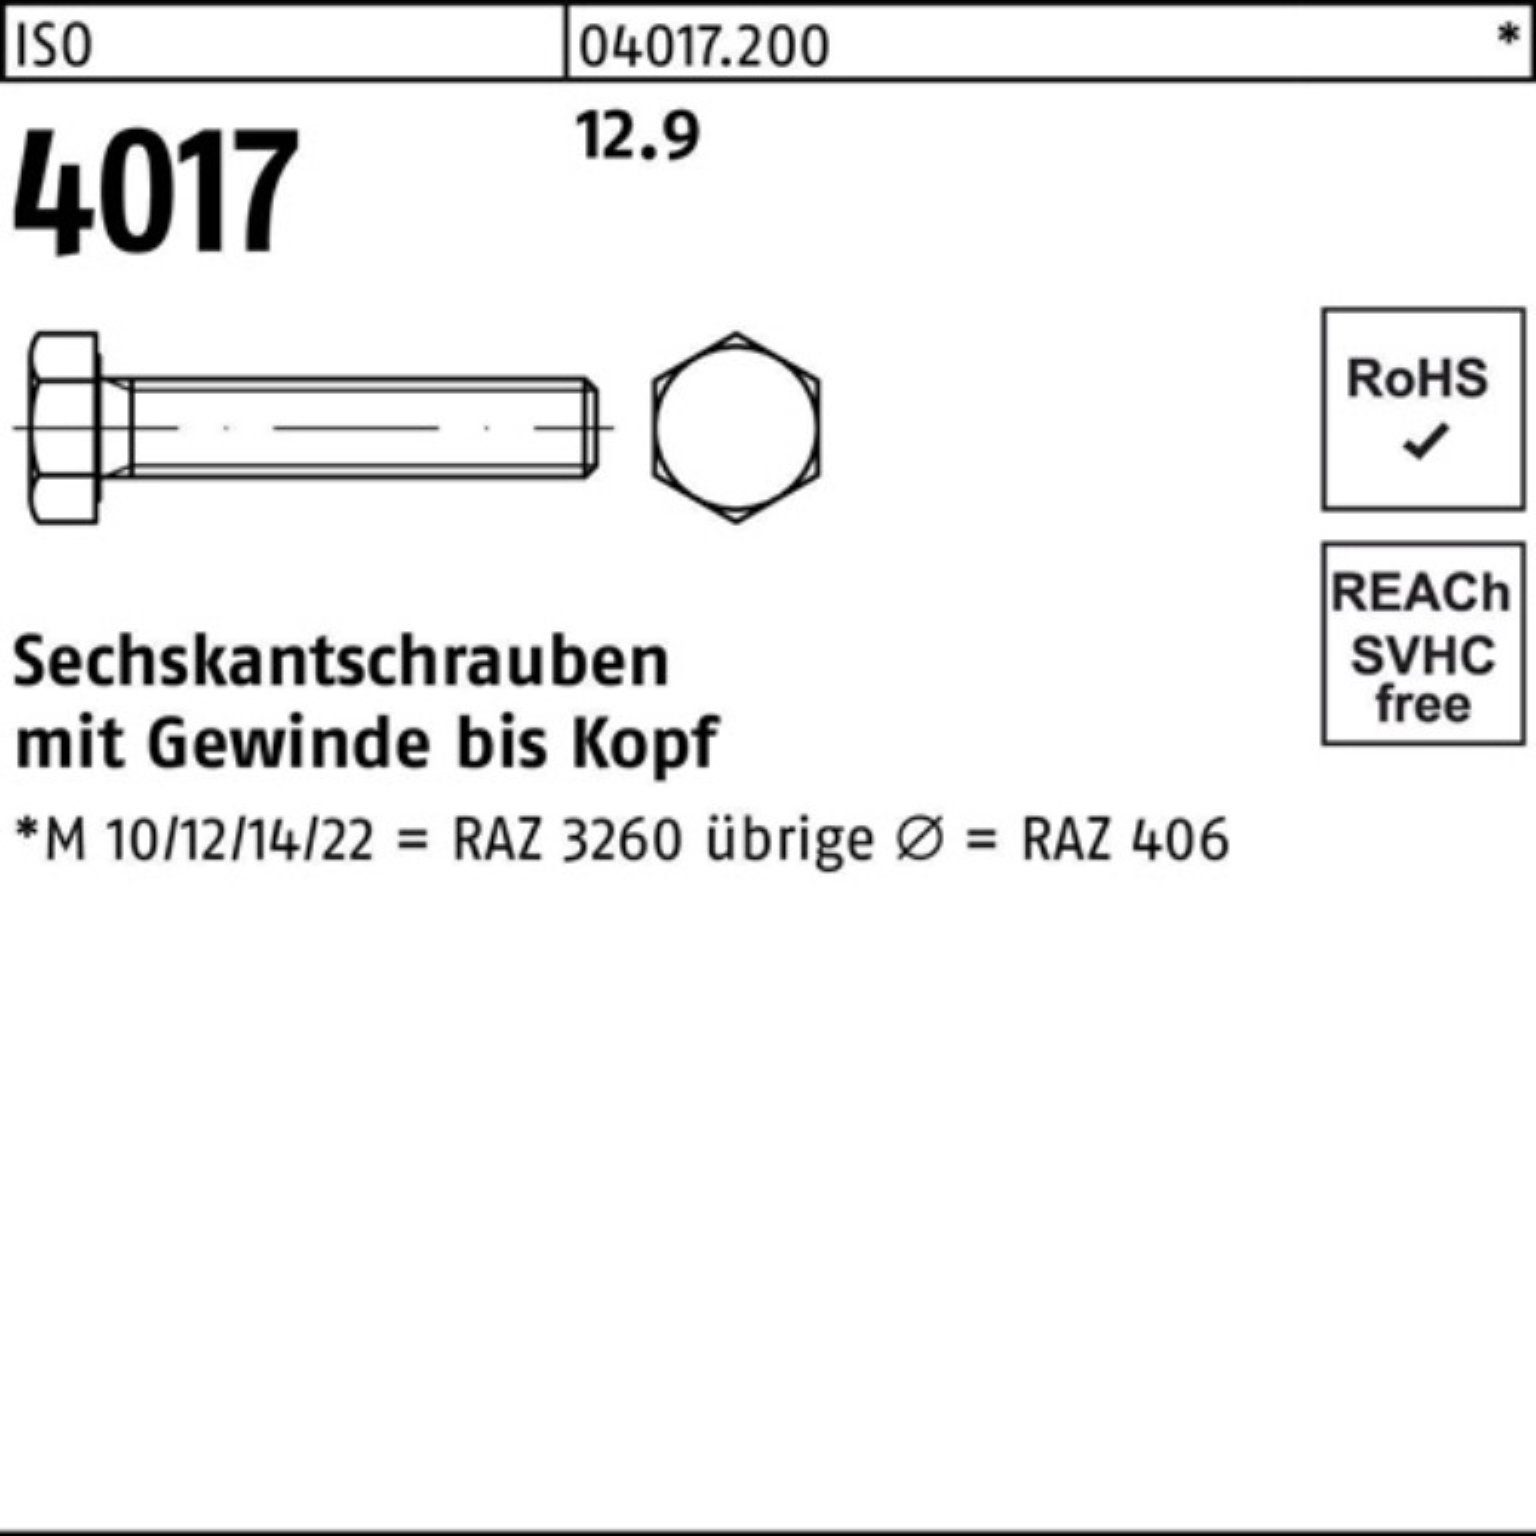 Bufab Sechskantschraube 200er ISO Stück M8x ISO 12.9 4017 Sechskantschraube 200 VG Pack 40 60